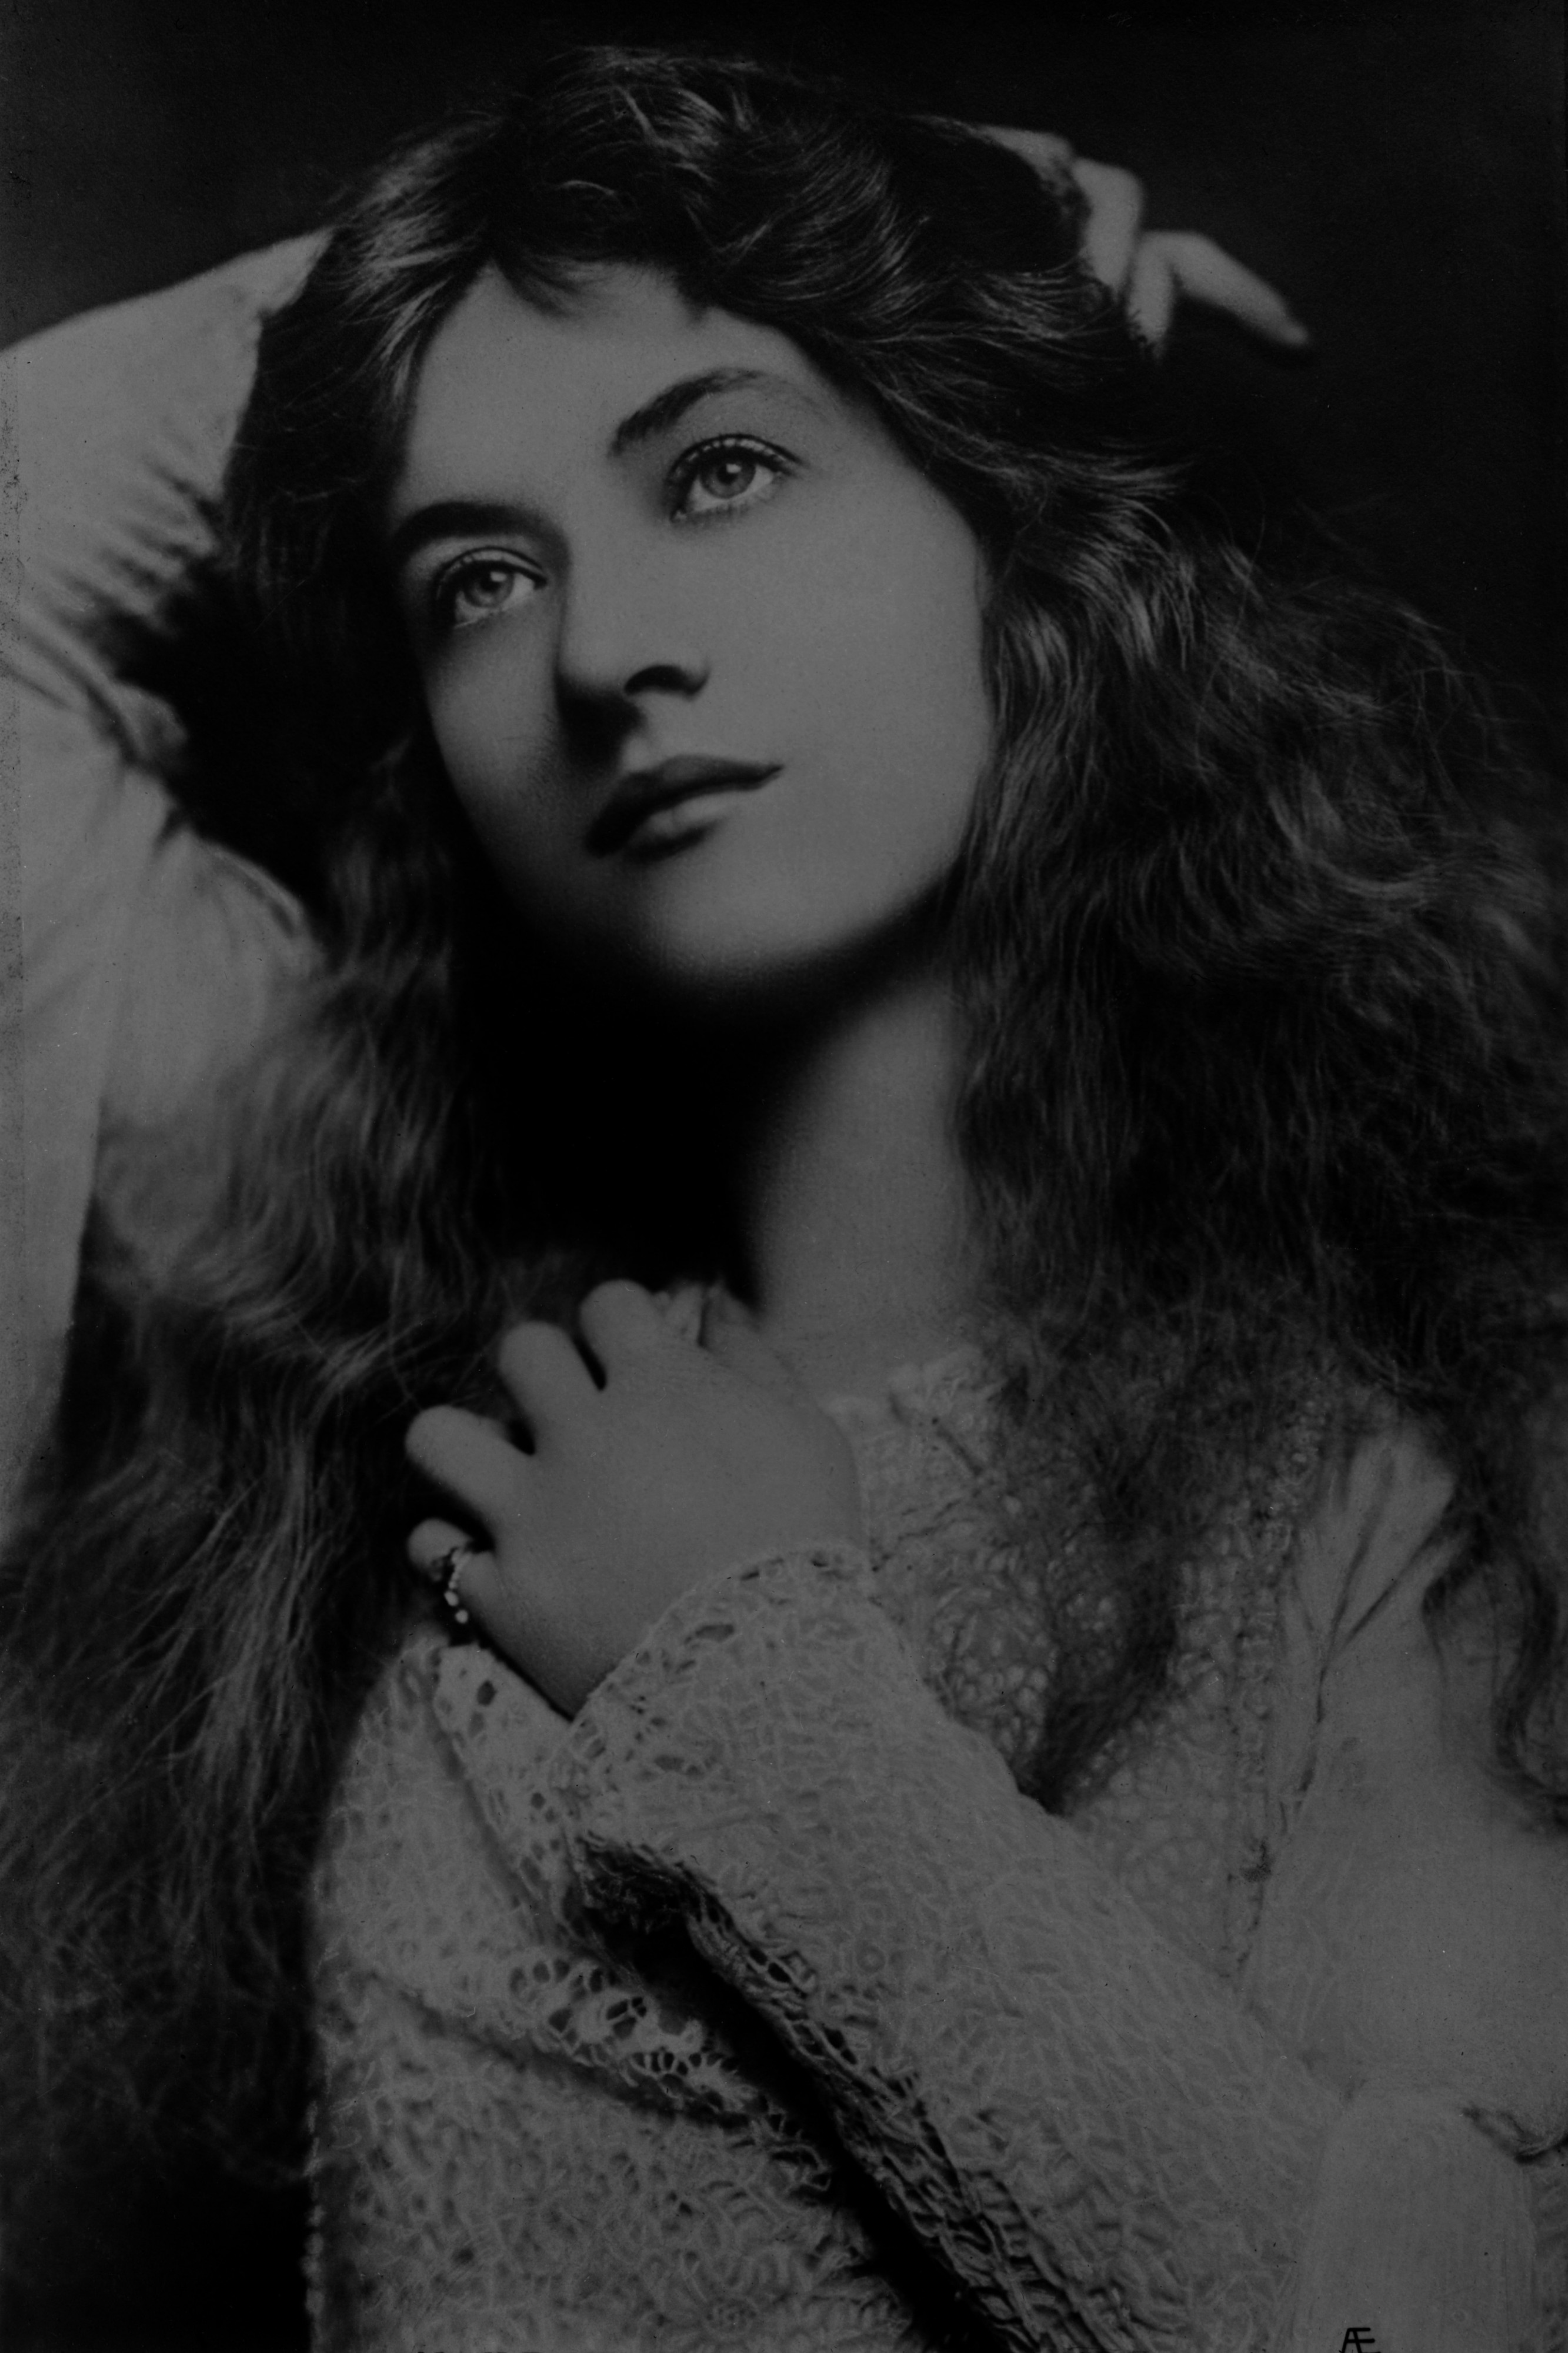 Maude Fealy by Lizzie Caswall Smith, ca. 1901